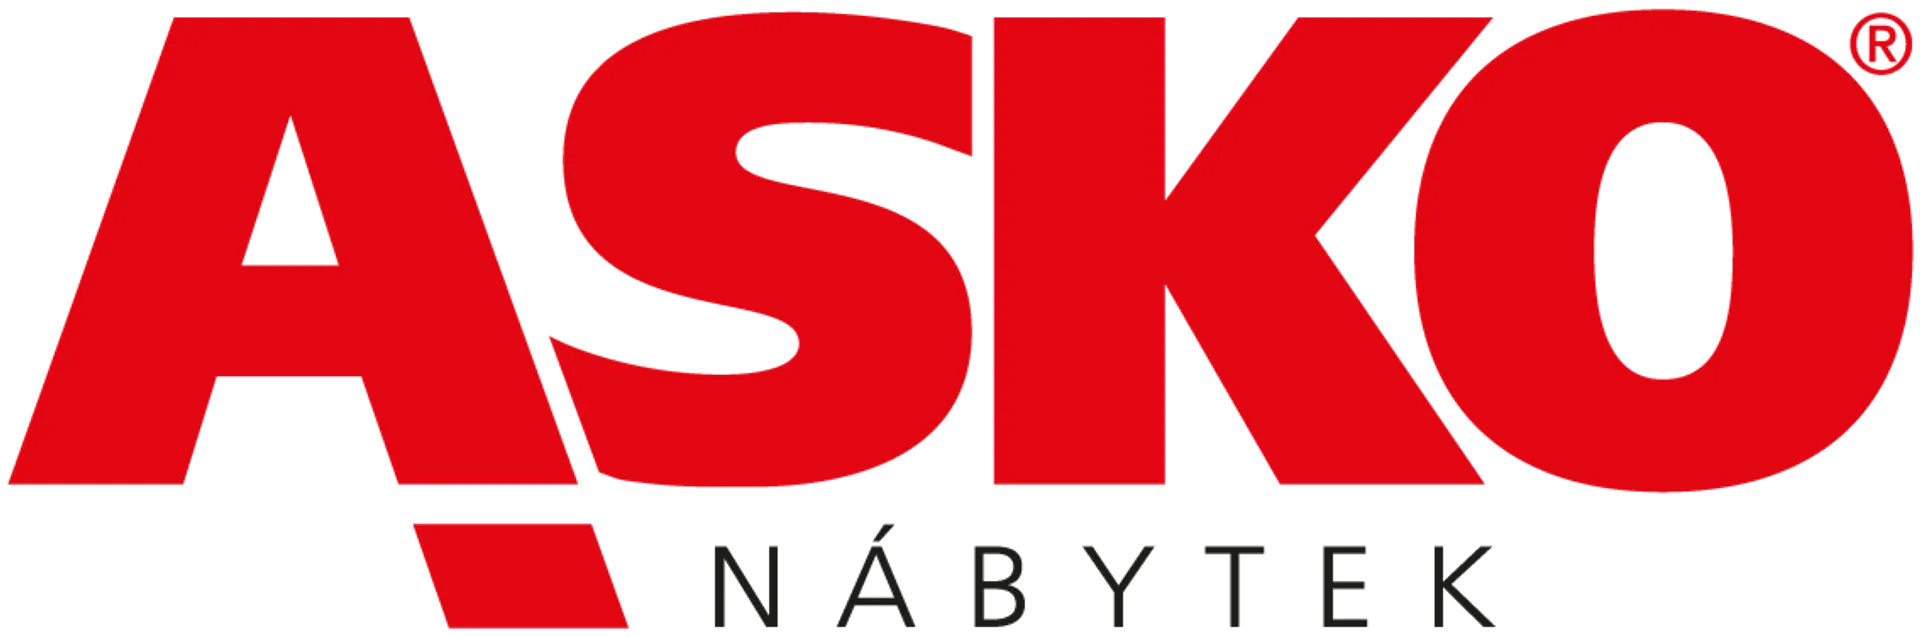 ASKO logo of current flyer